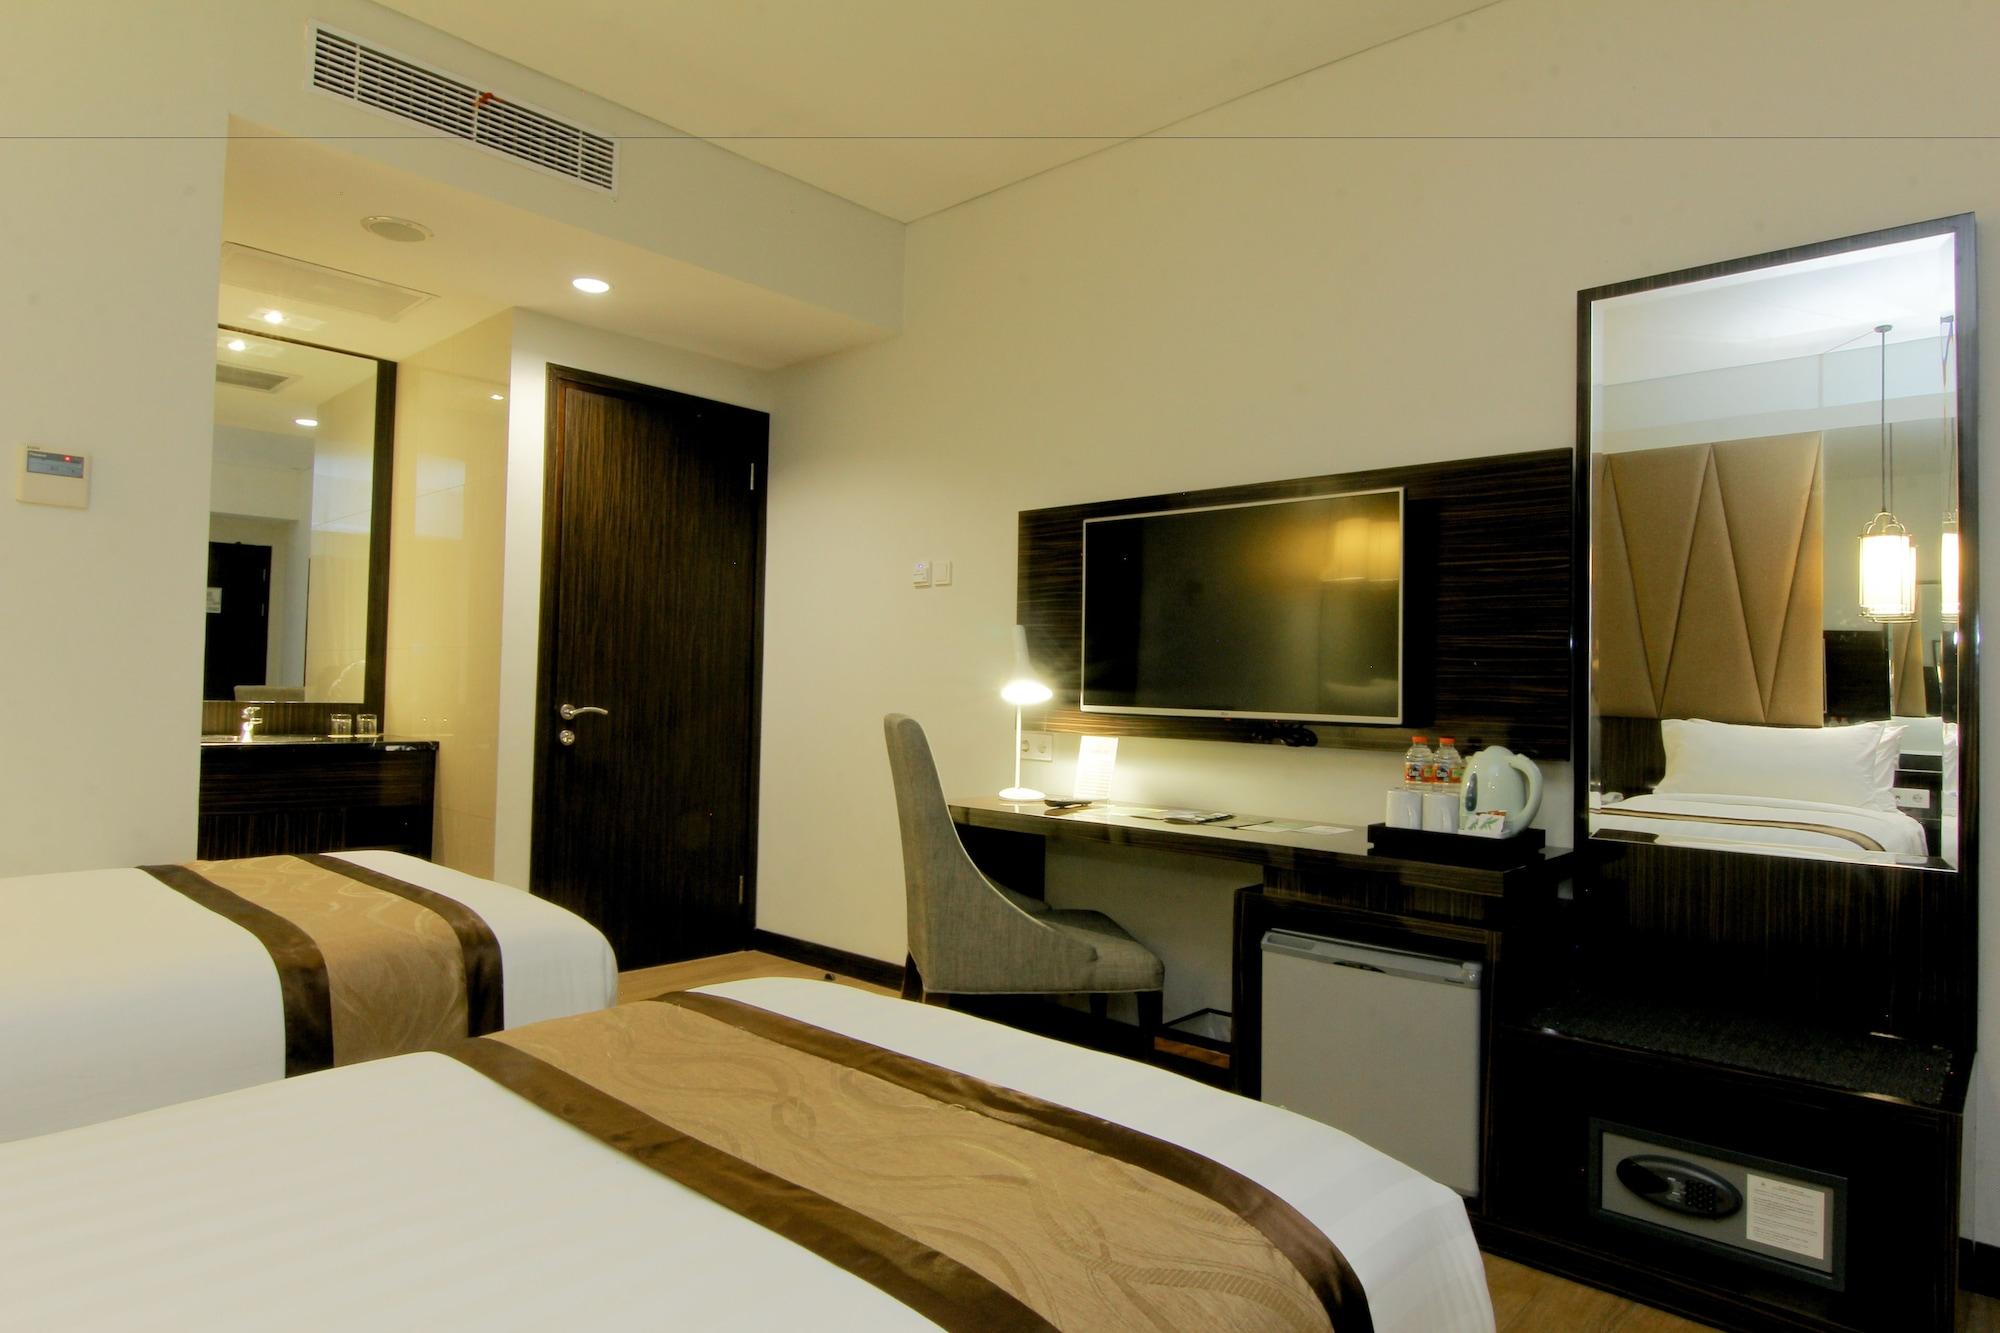 Rekomendasi Hotel Dengan Harga Terjangkau dan Kualitas Terbaik di Purwokerto